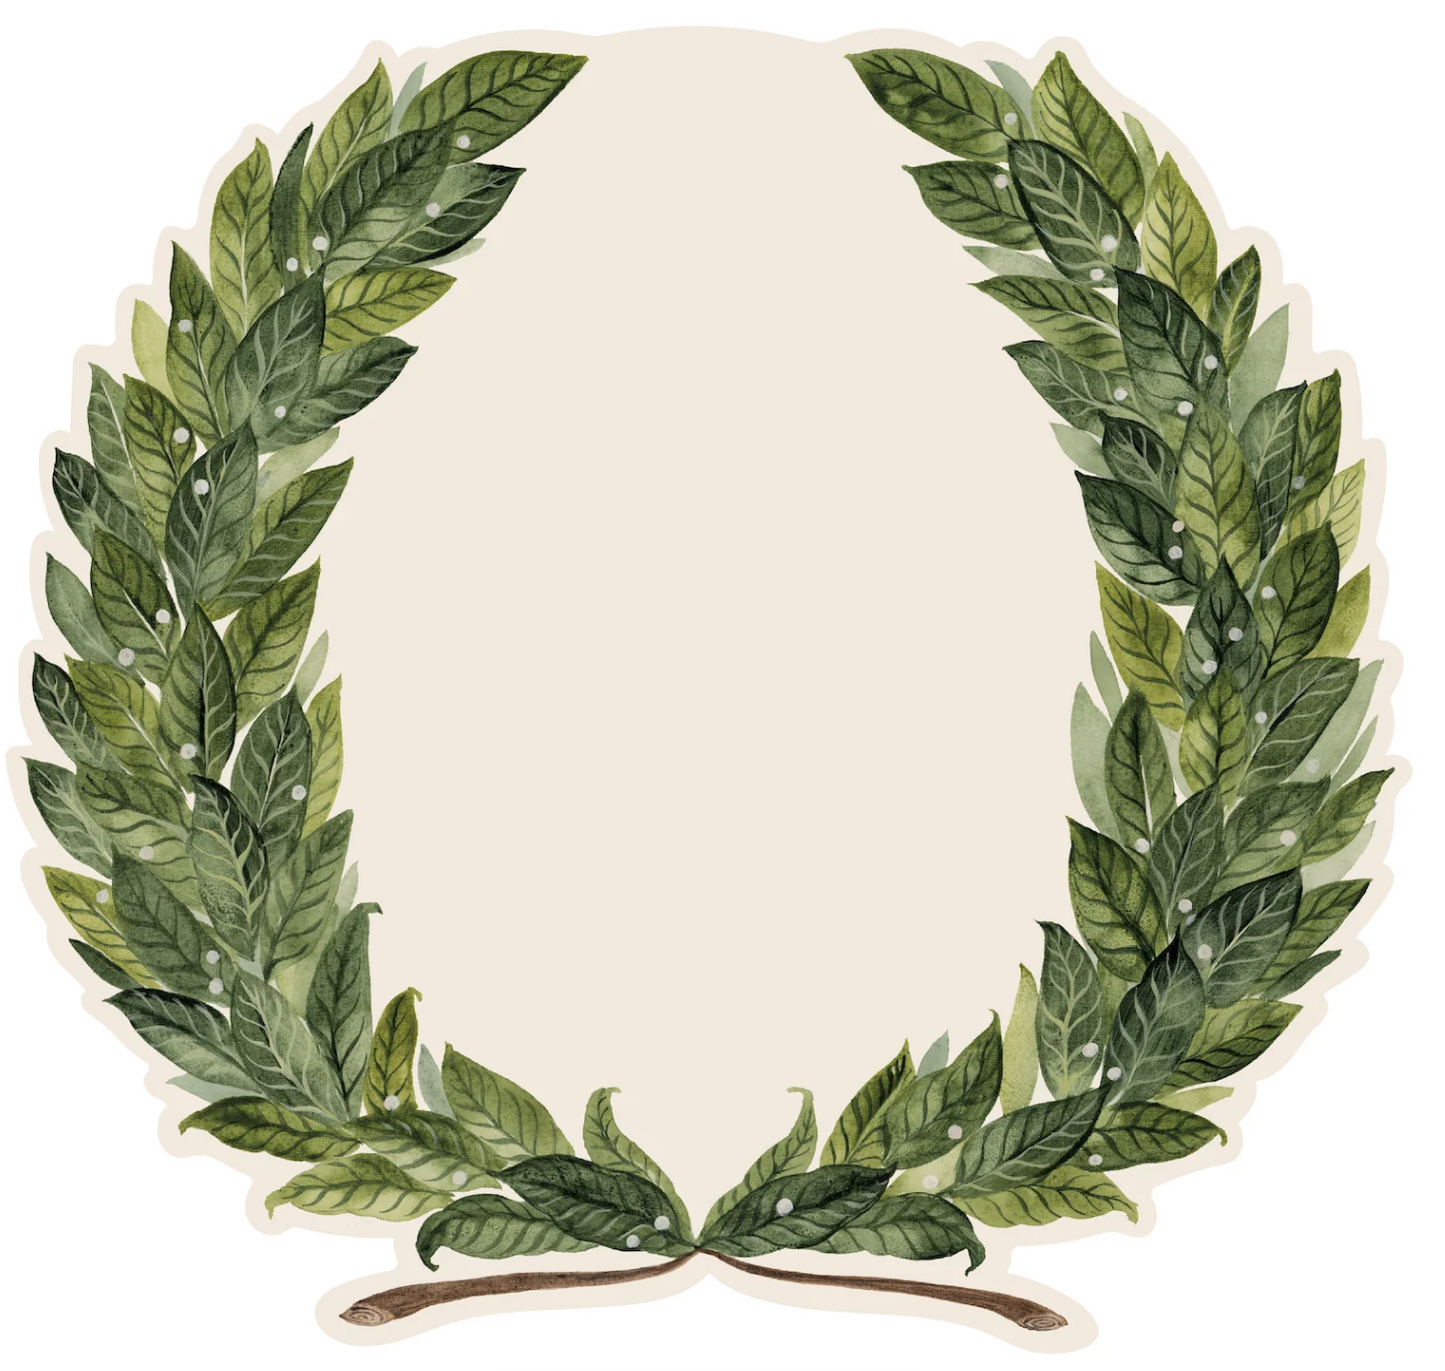 Die-cut Laurel Wreath Placemat